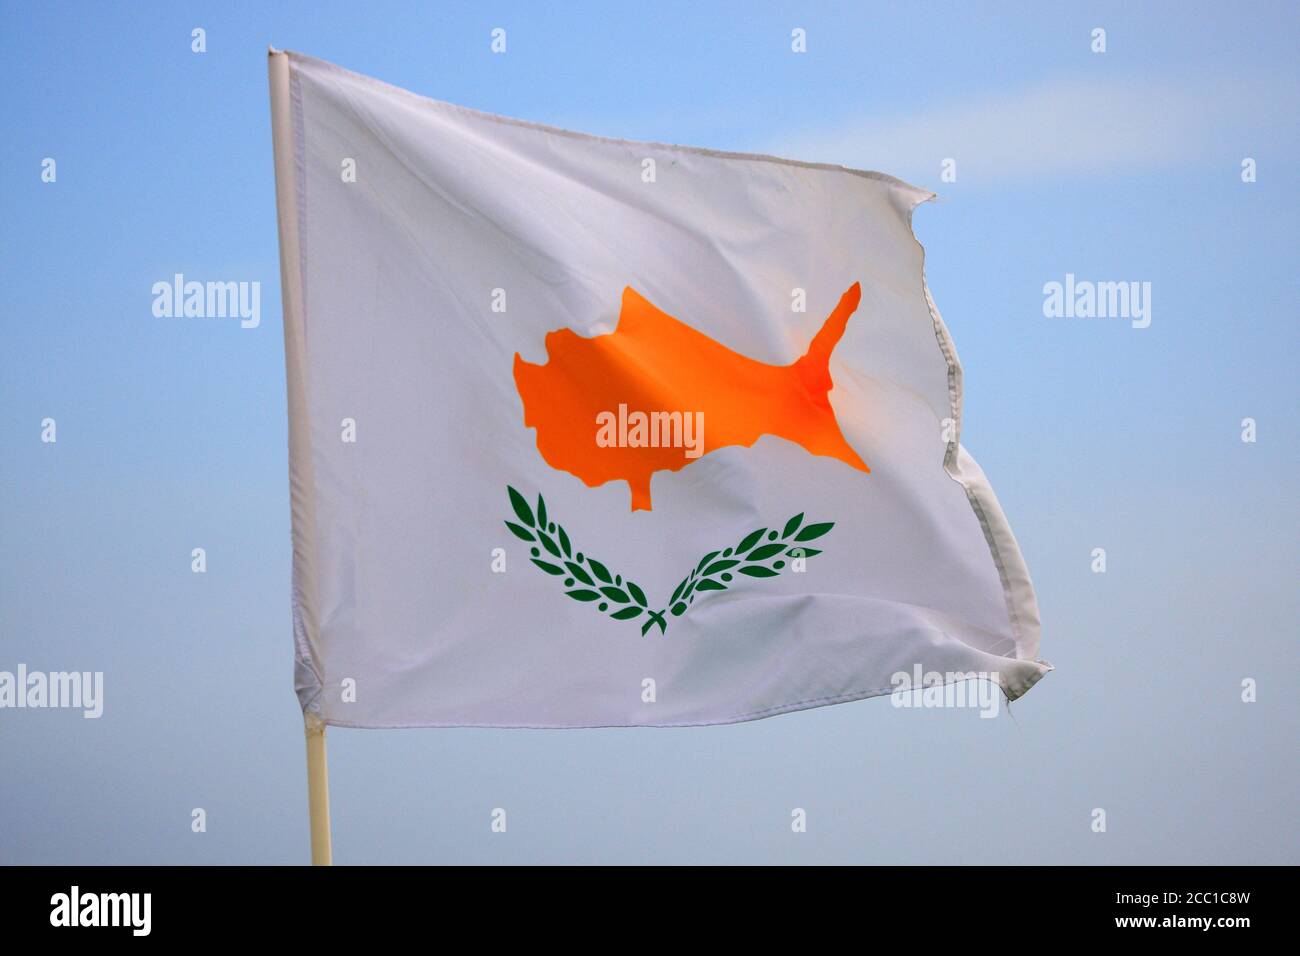 Chypre, drapeau chypriote Banque D'Images